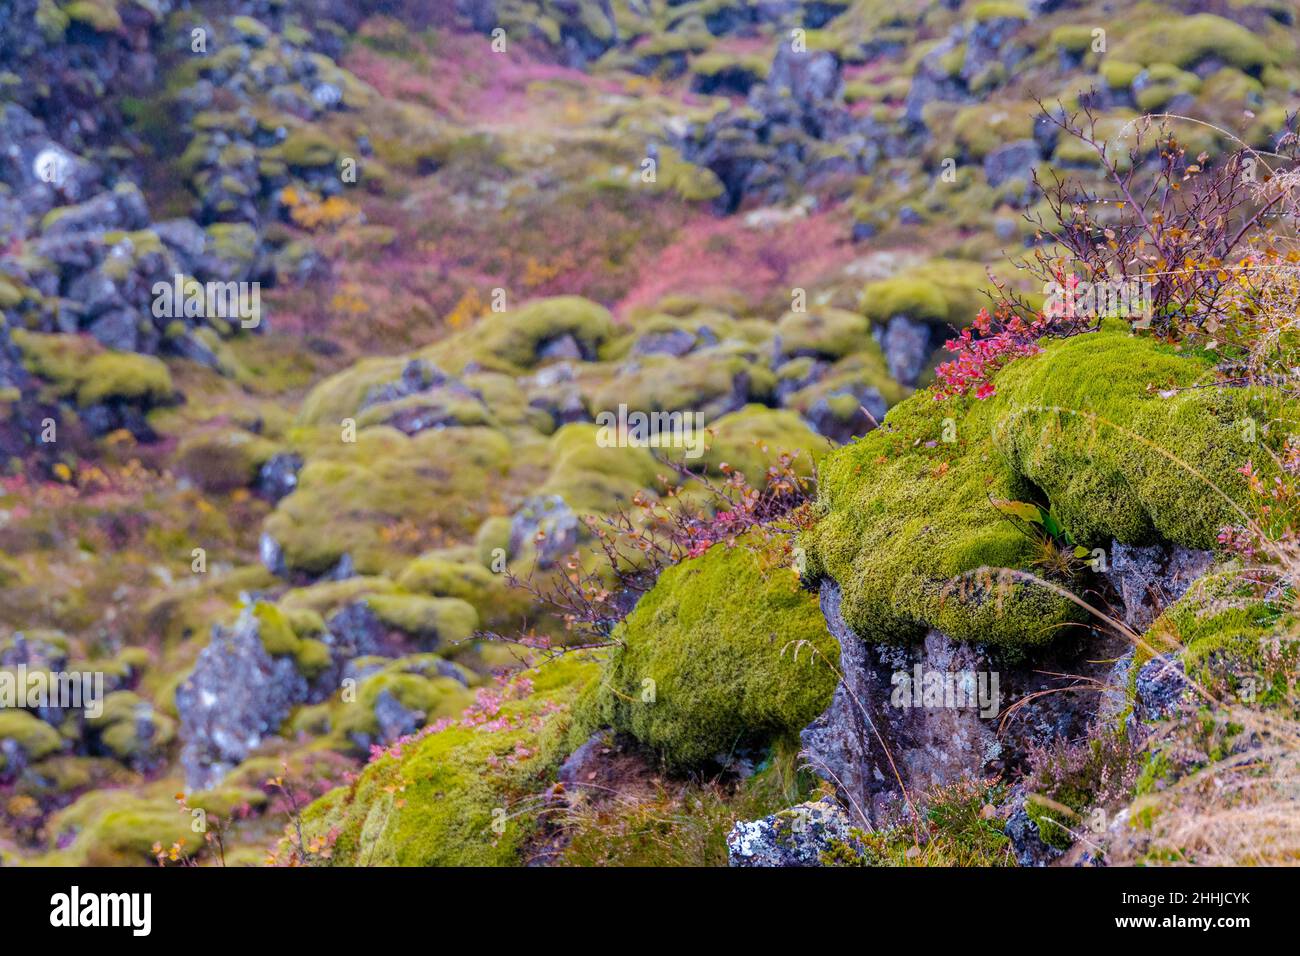 Im Land der Feen und Elfen Island das verborgene Volk - In the land of fairies and elves Iceland the hidden people Stock Photo